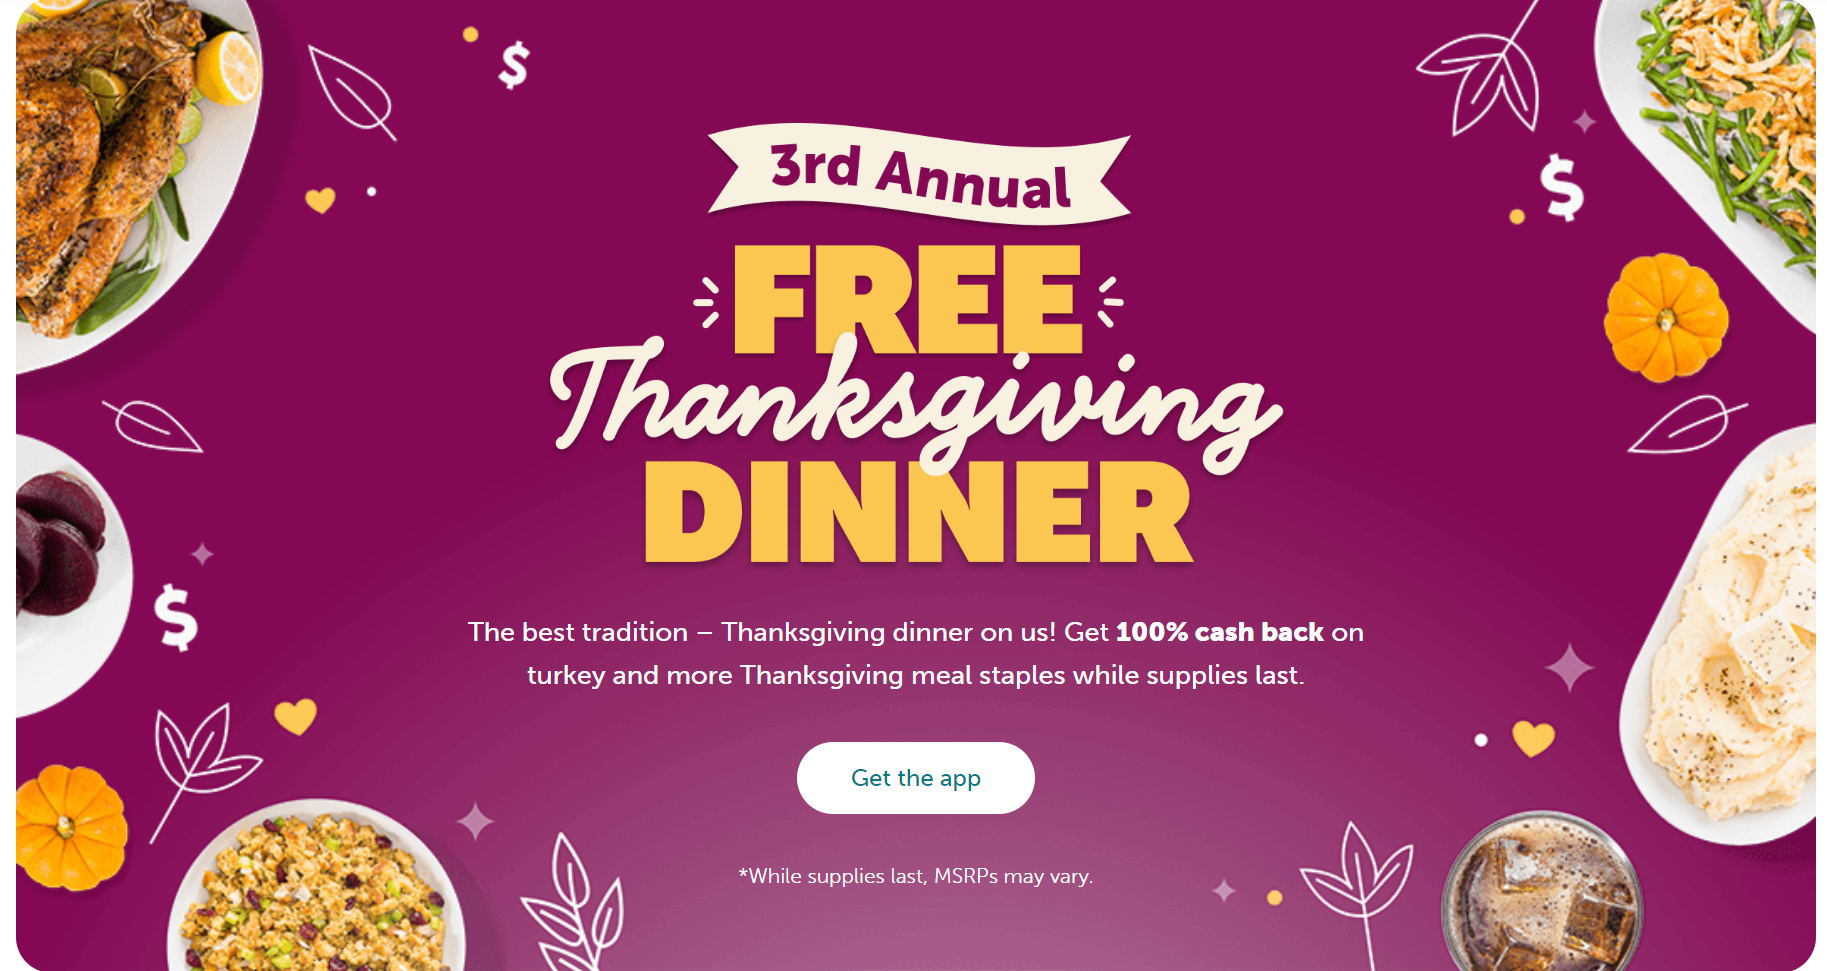 Free Thanksgiving Dinner from Ibotta